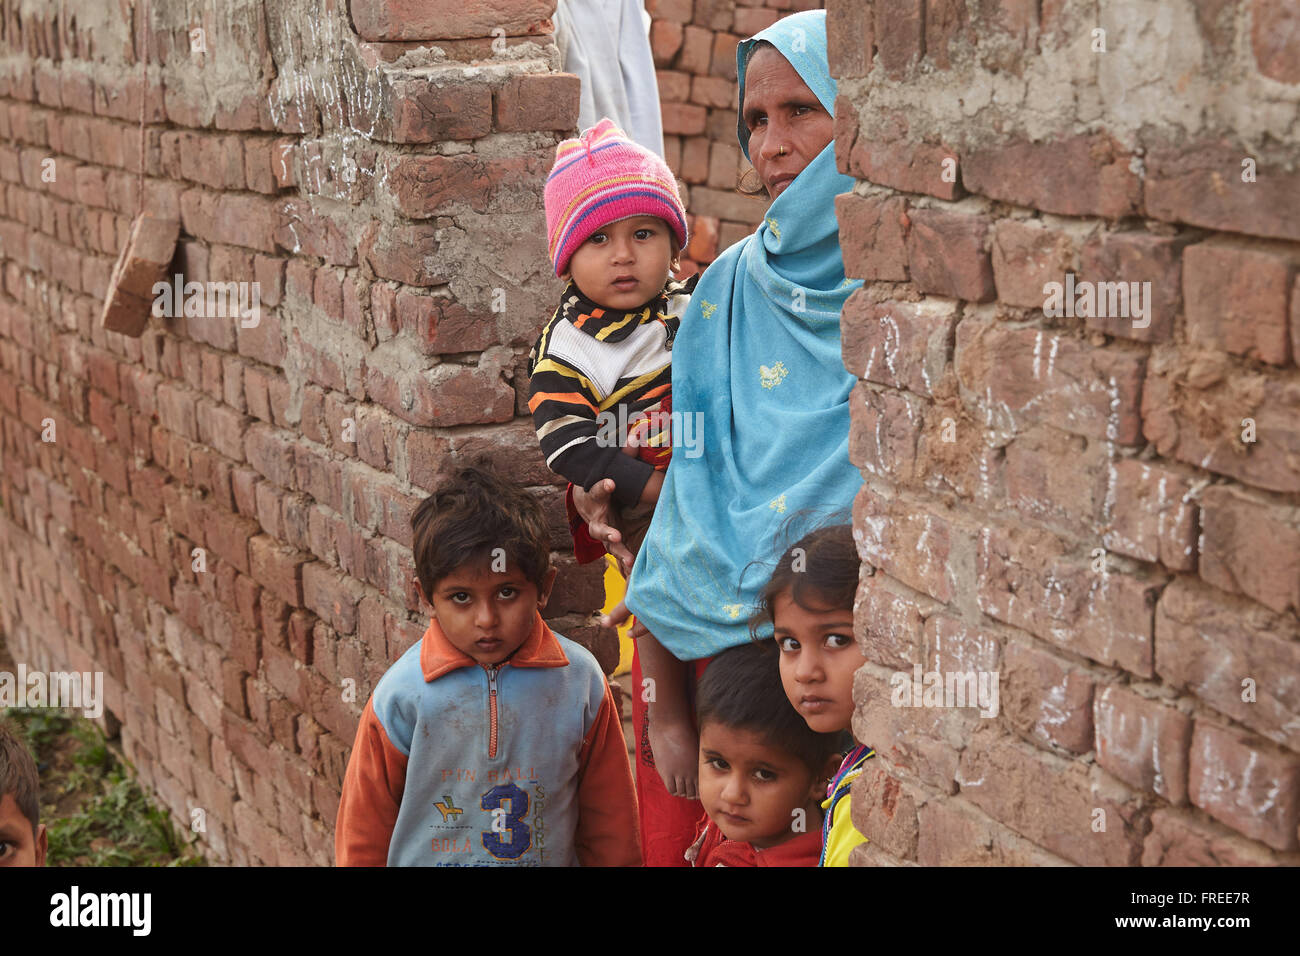 Mère avec des enfants vivant dans une briqueterie, Mahey, Pakistan Banque D'Images